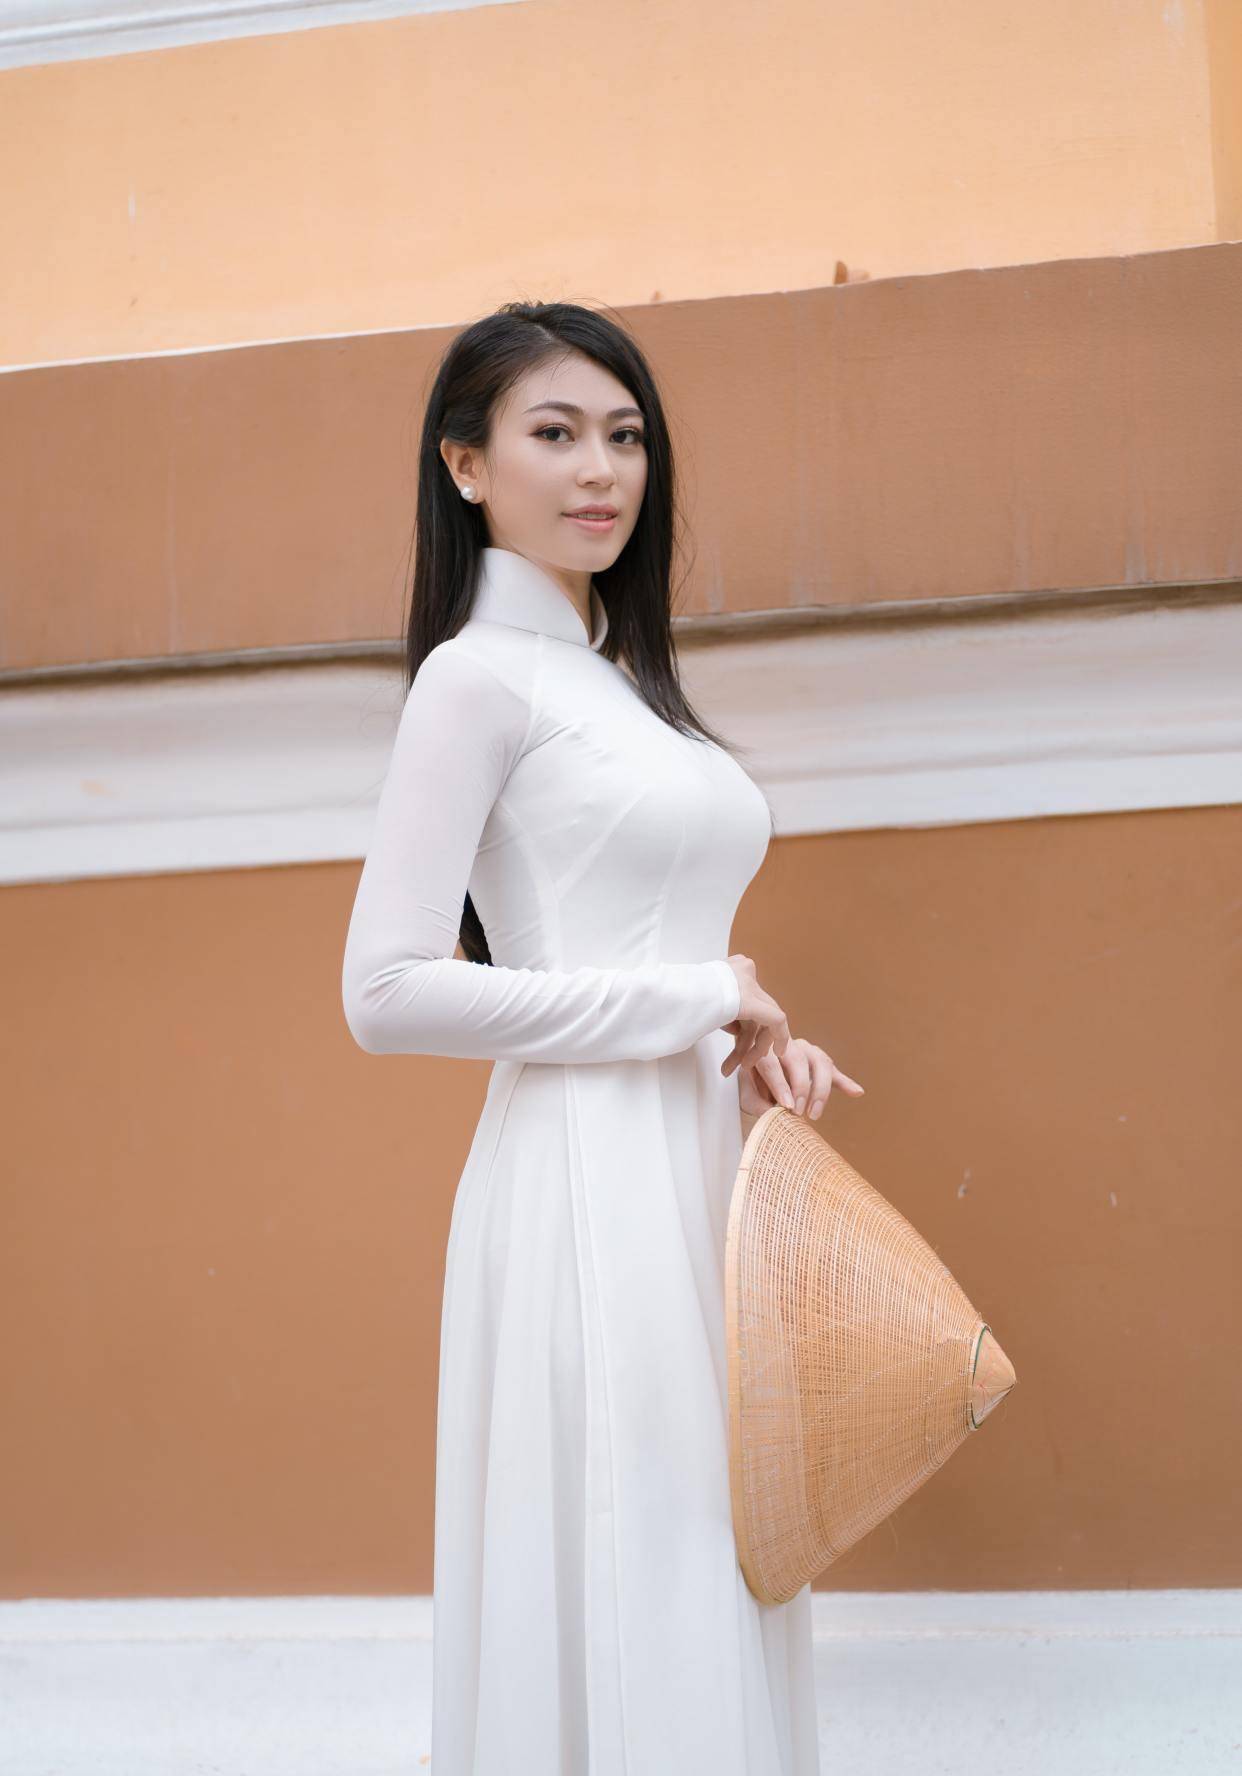 气质型越南美女,穿搭奥黛服,显身材,散发着独特的魅力